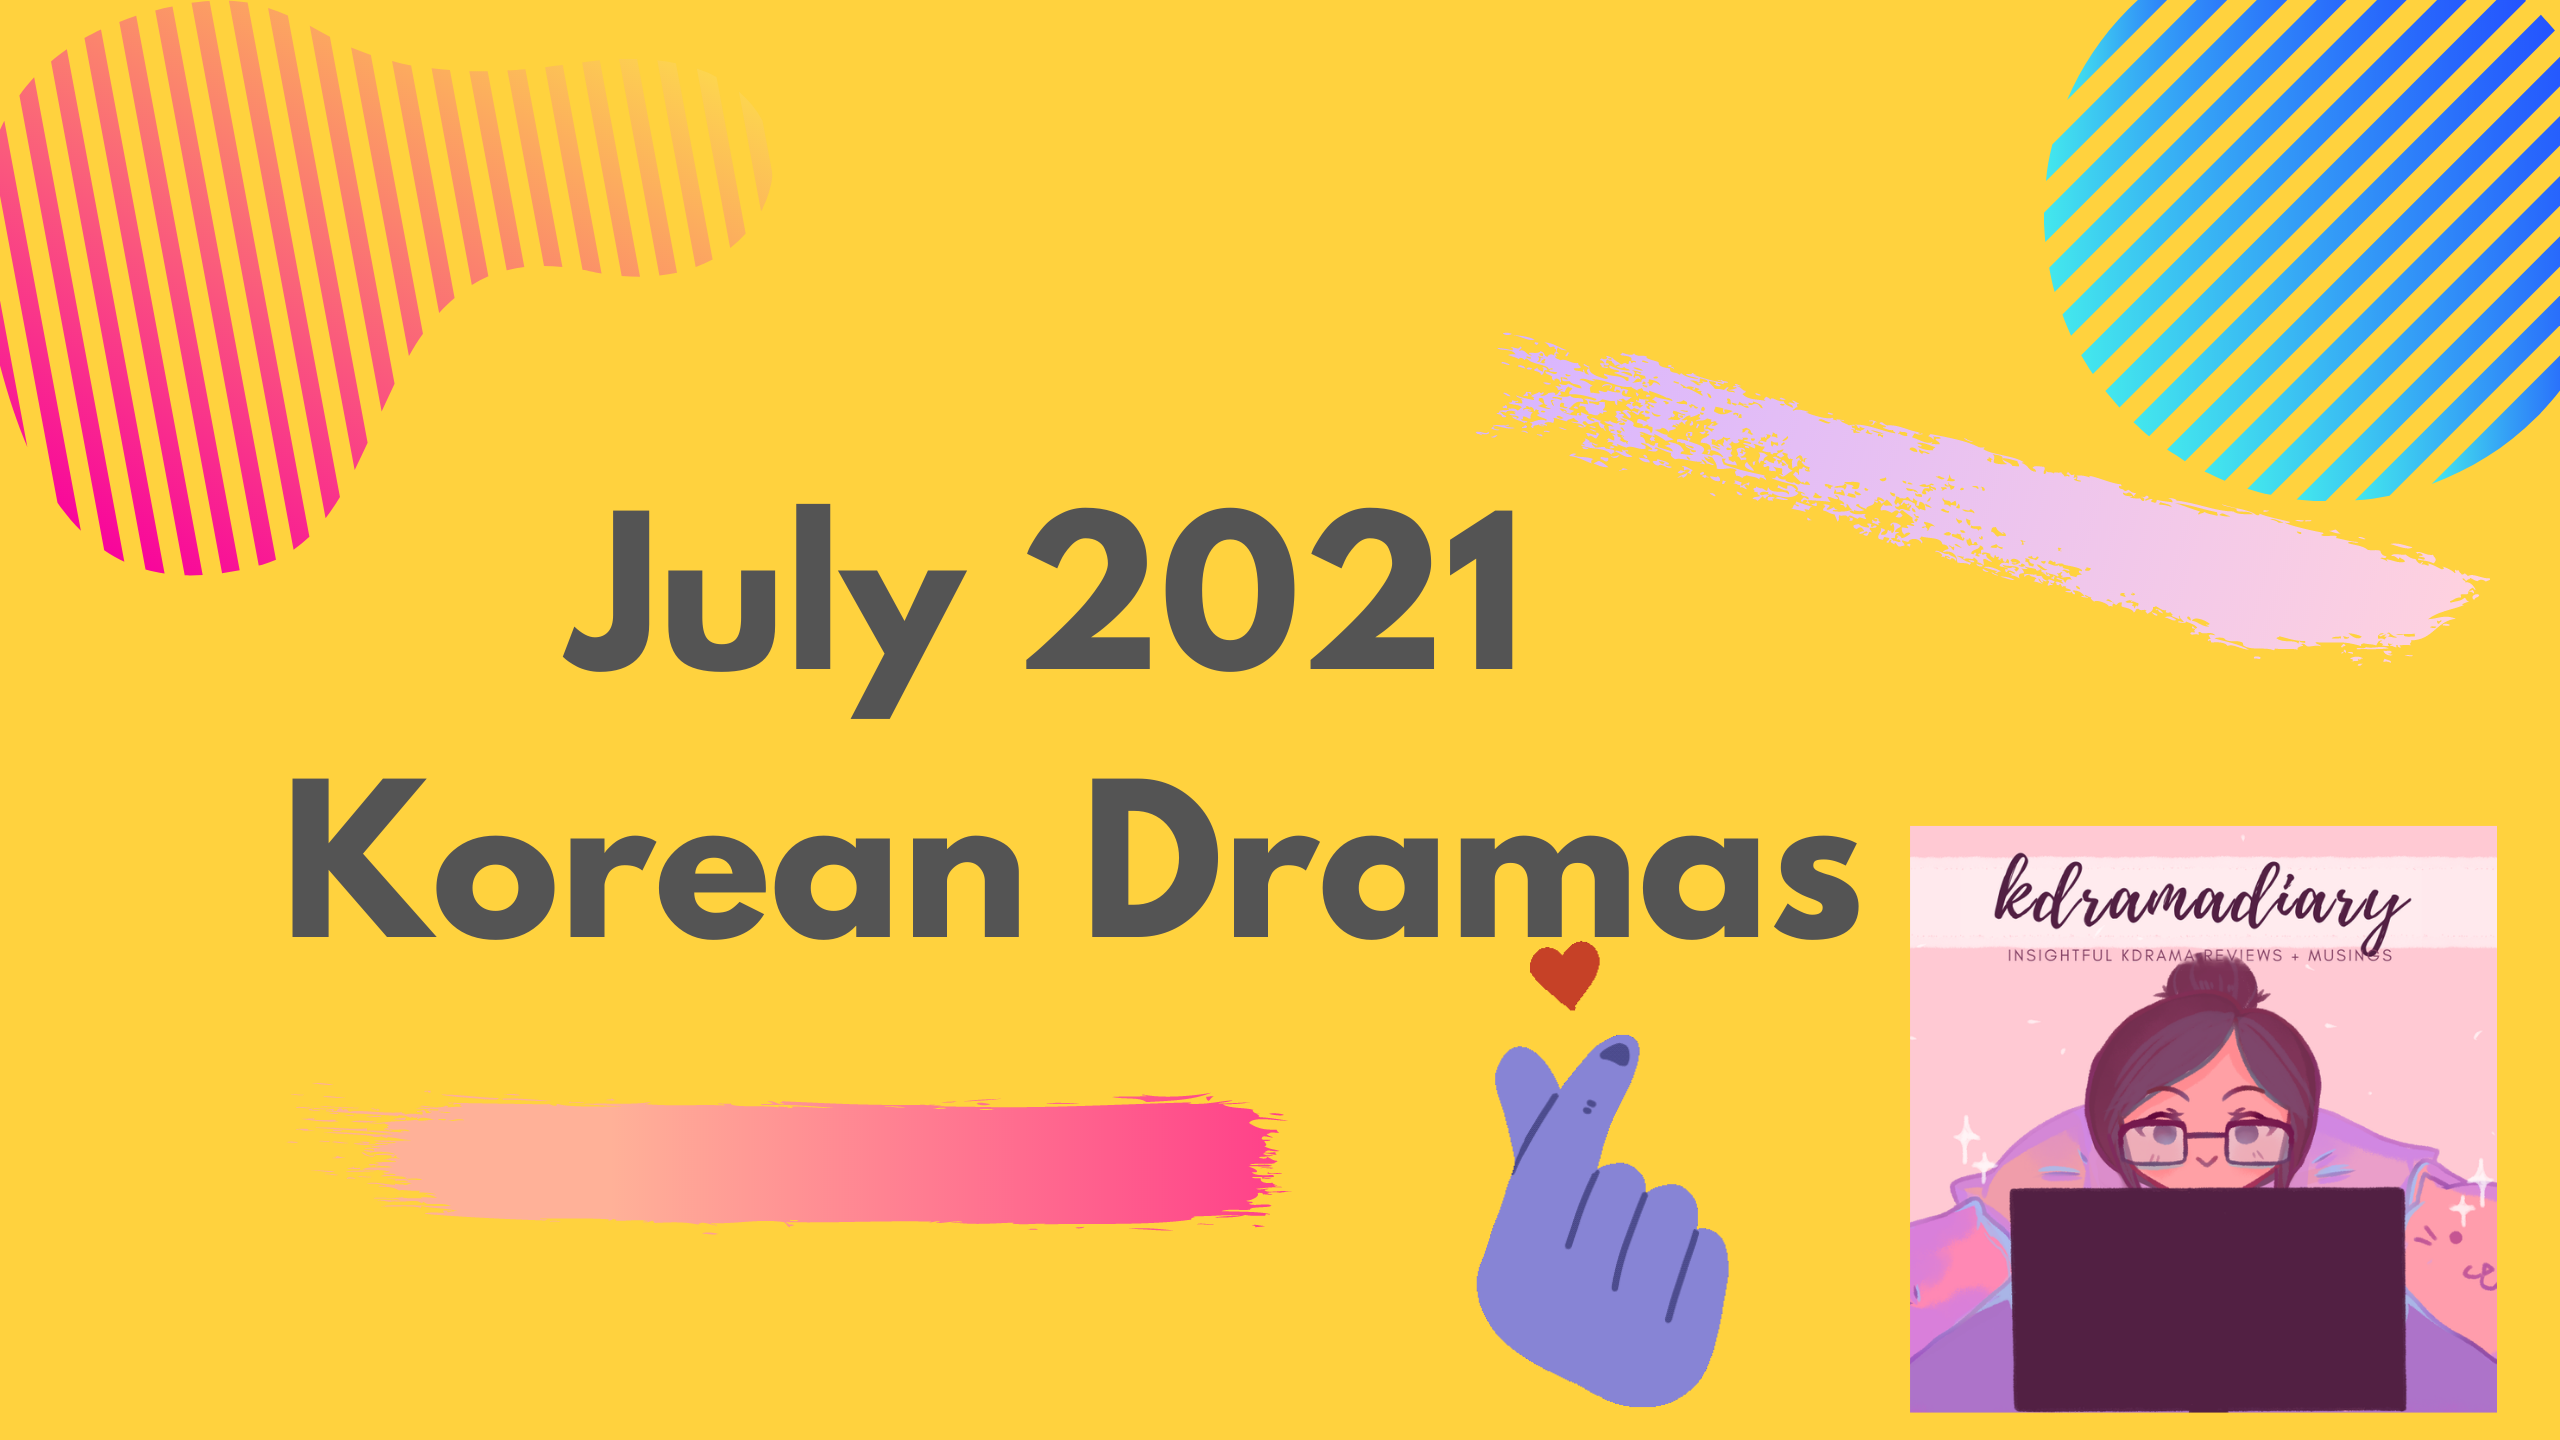 July 2021 Korean Dramas